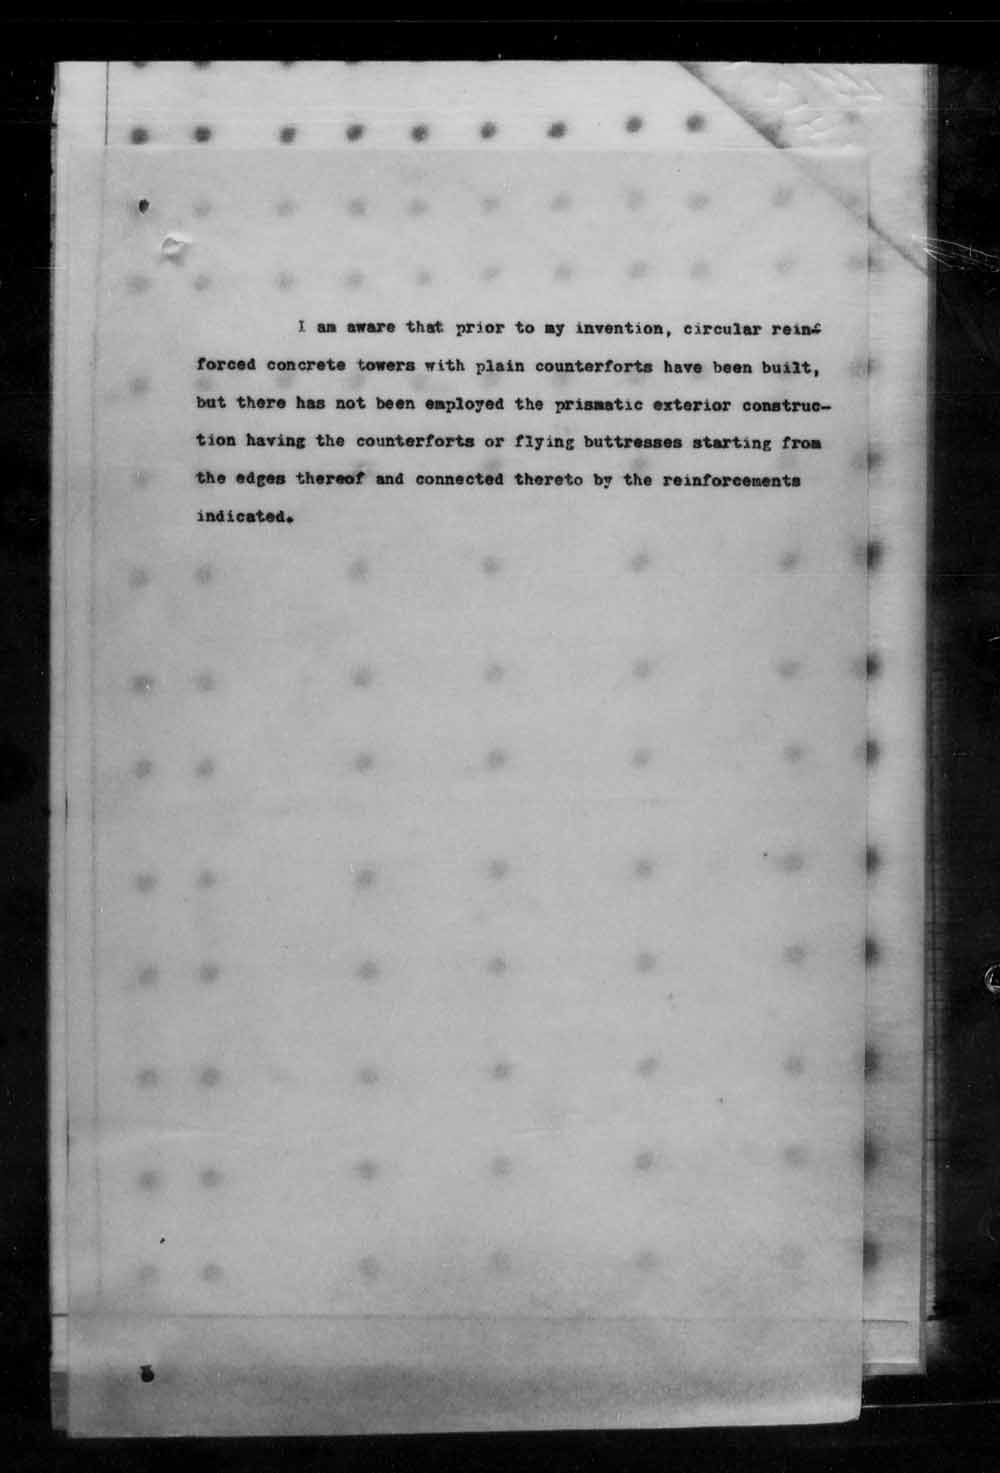 Page numérisé de Brevets canadiens, 1869-1919 pour l'image numéro: e004870890